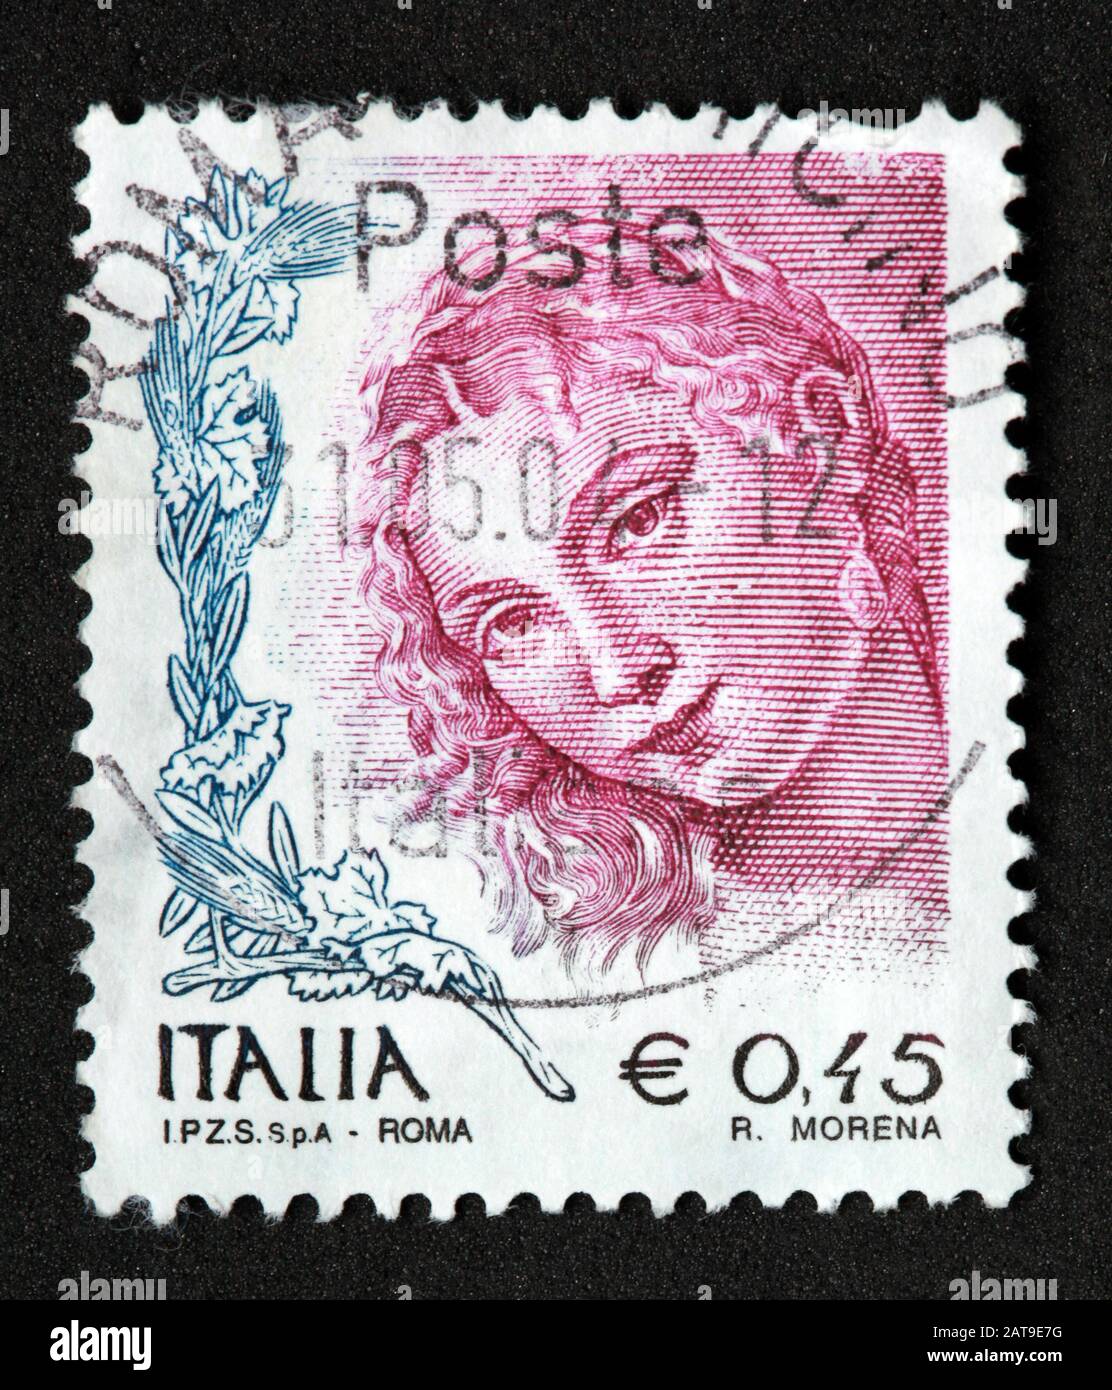 Francobollo italiano, usato da poste Italia e franco, Italia E0.45 Roma R.morena Foto Stock